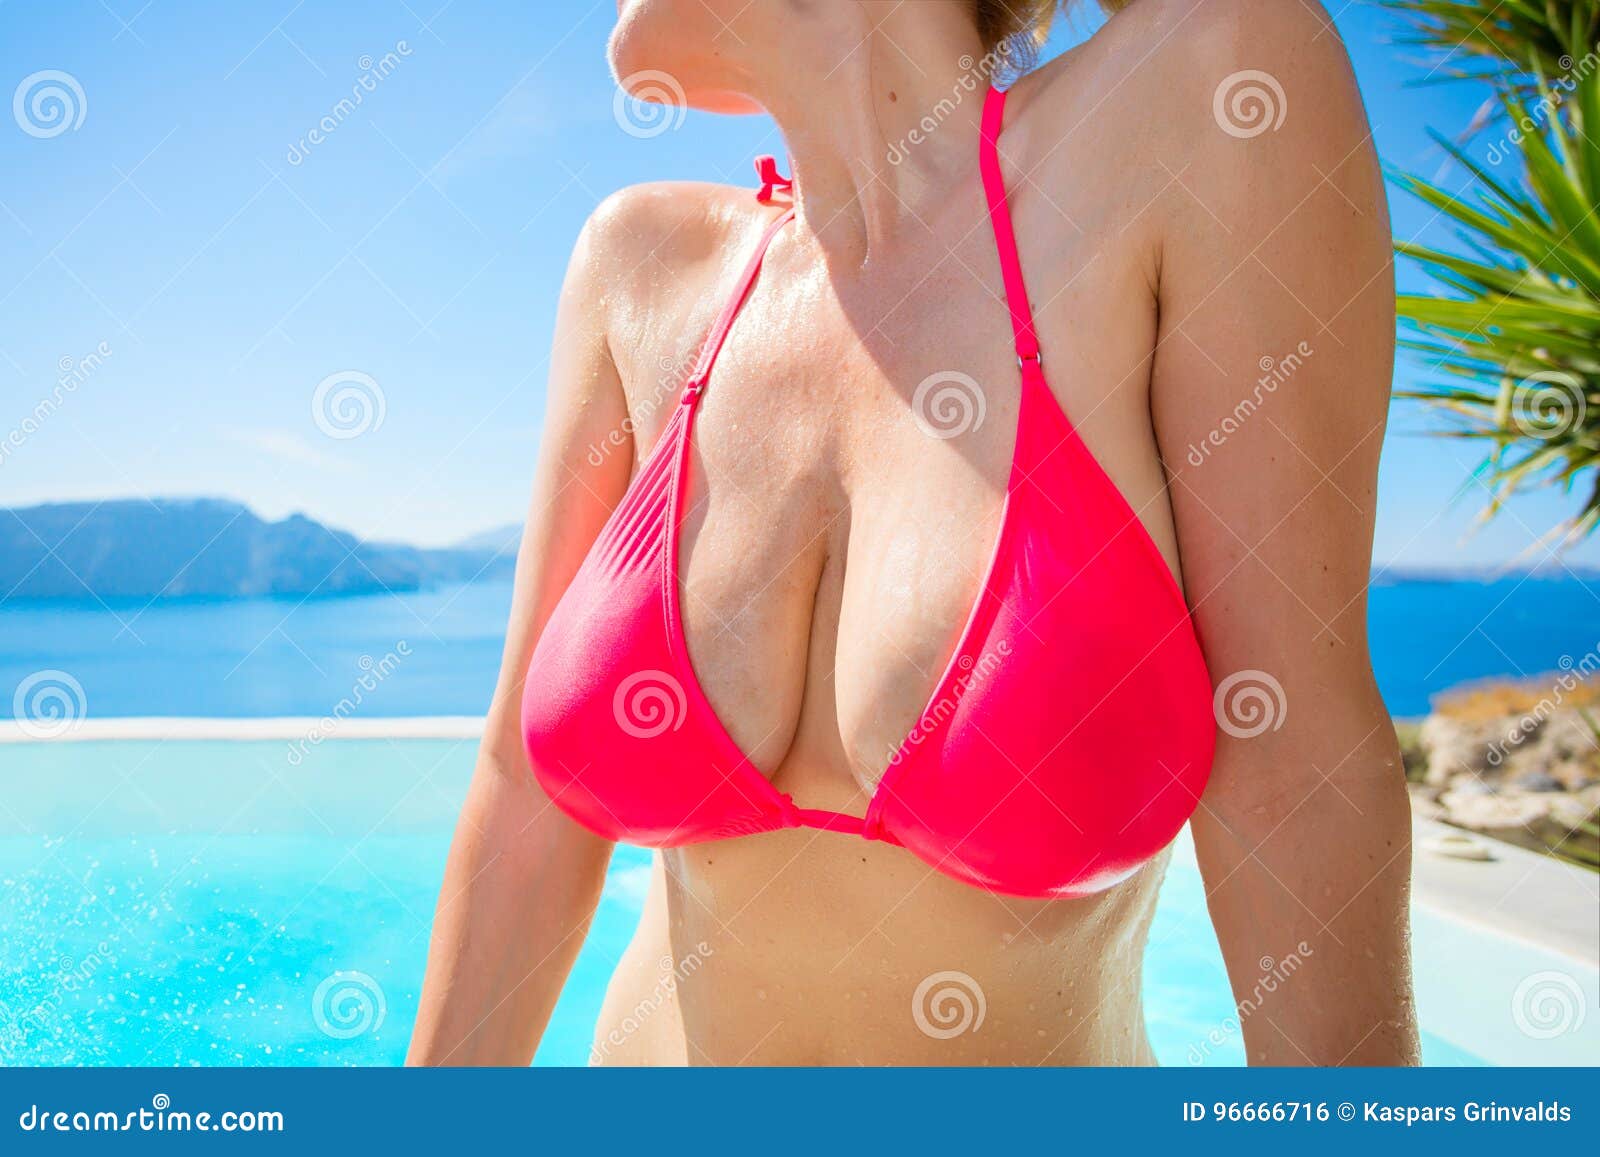 Big boobs in bikini